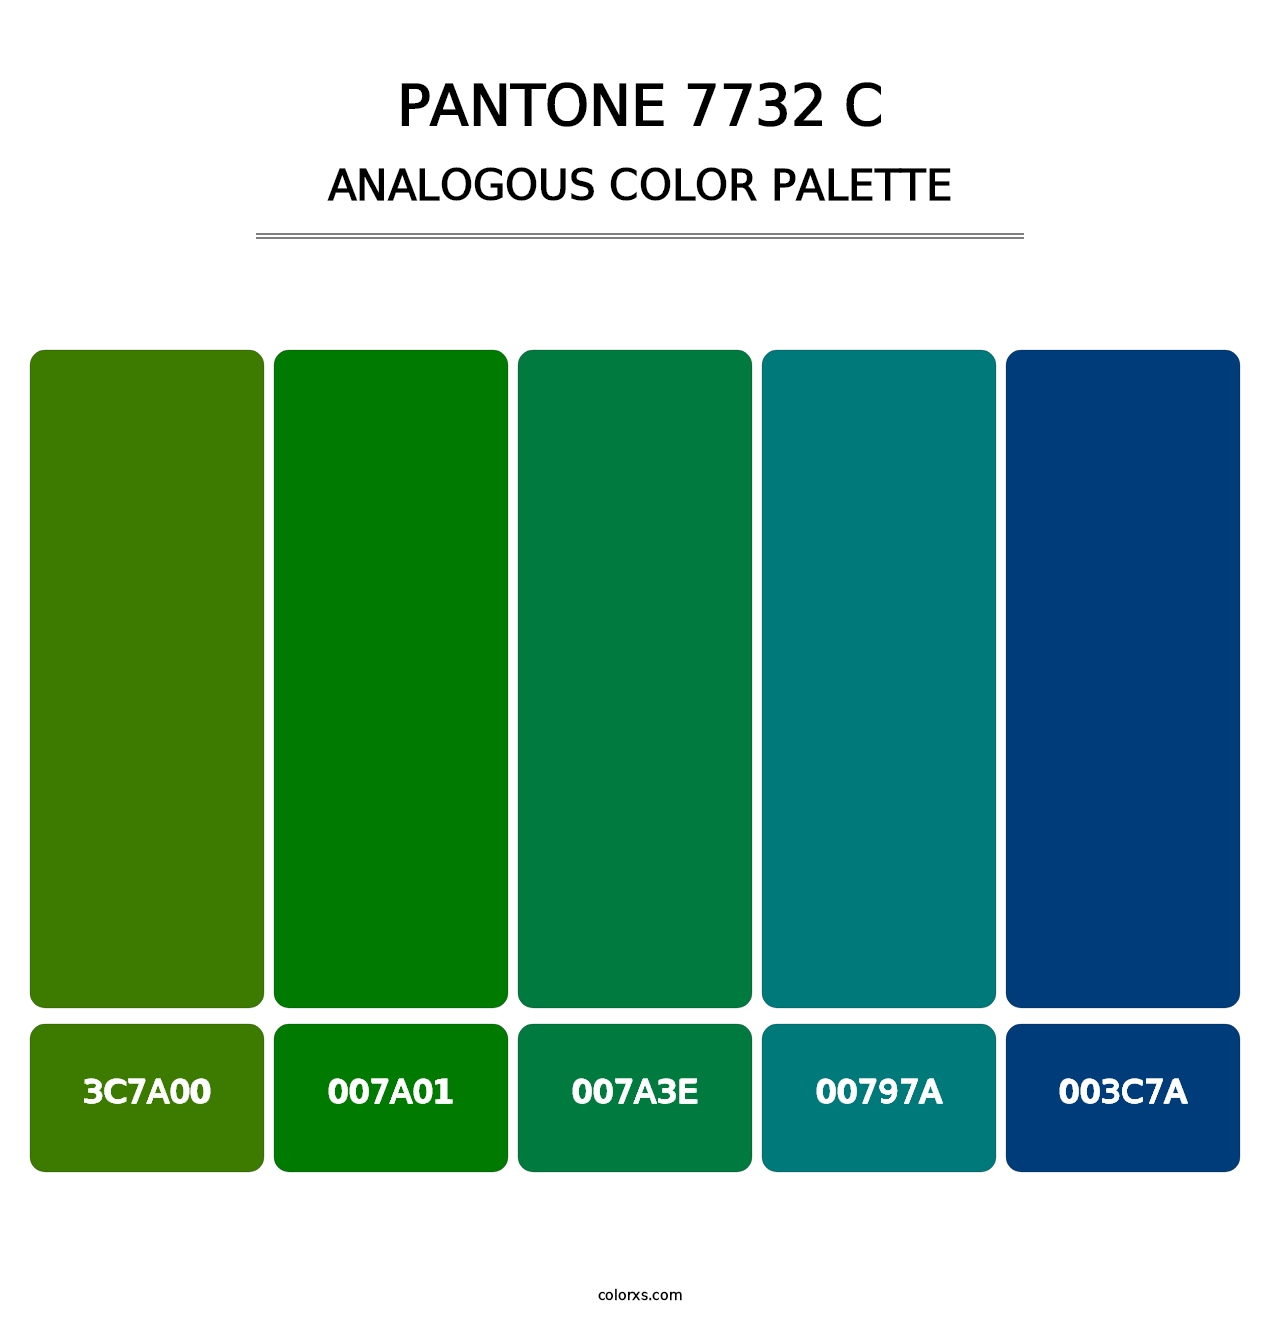 PANTONE 7732 C - Analogous Color Palette